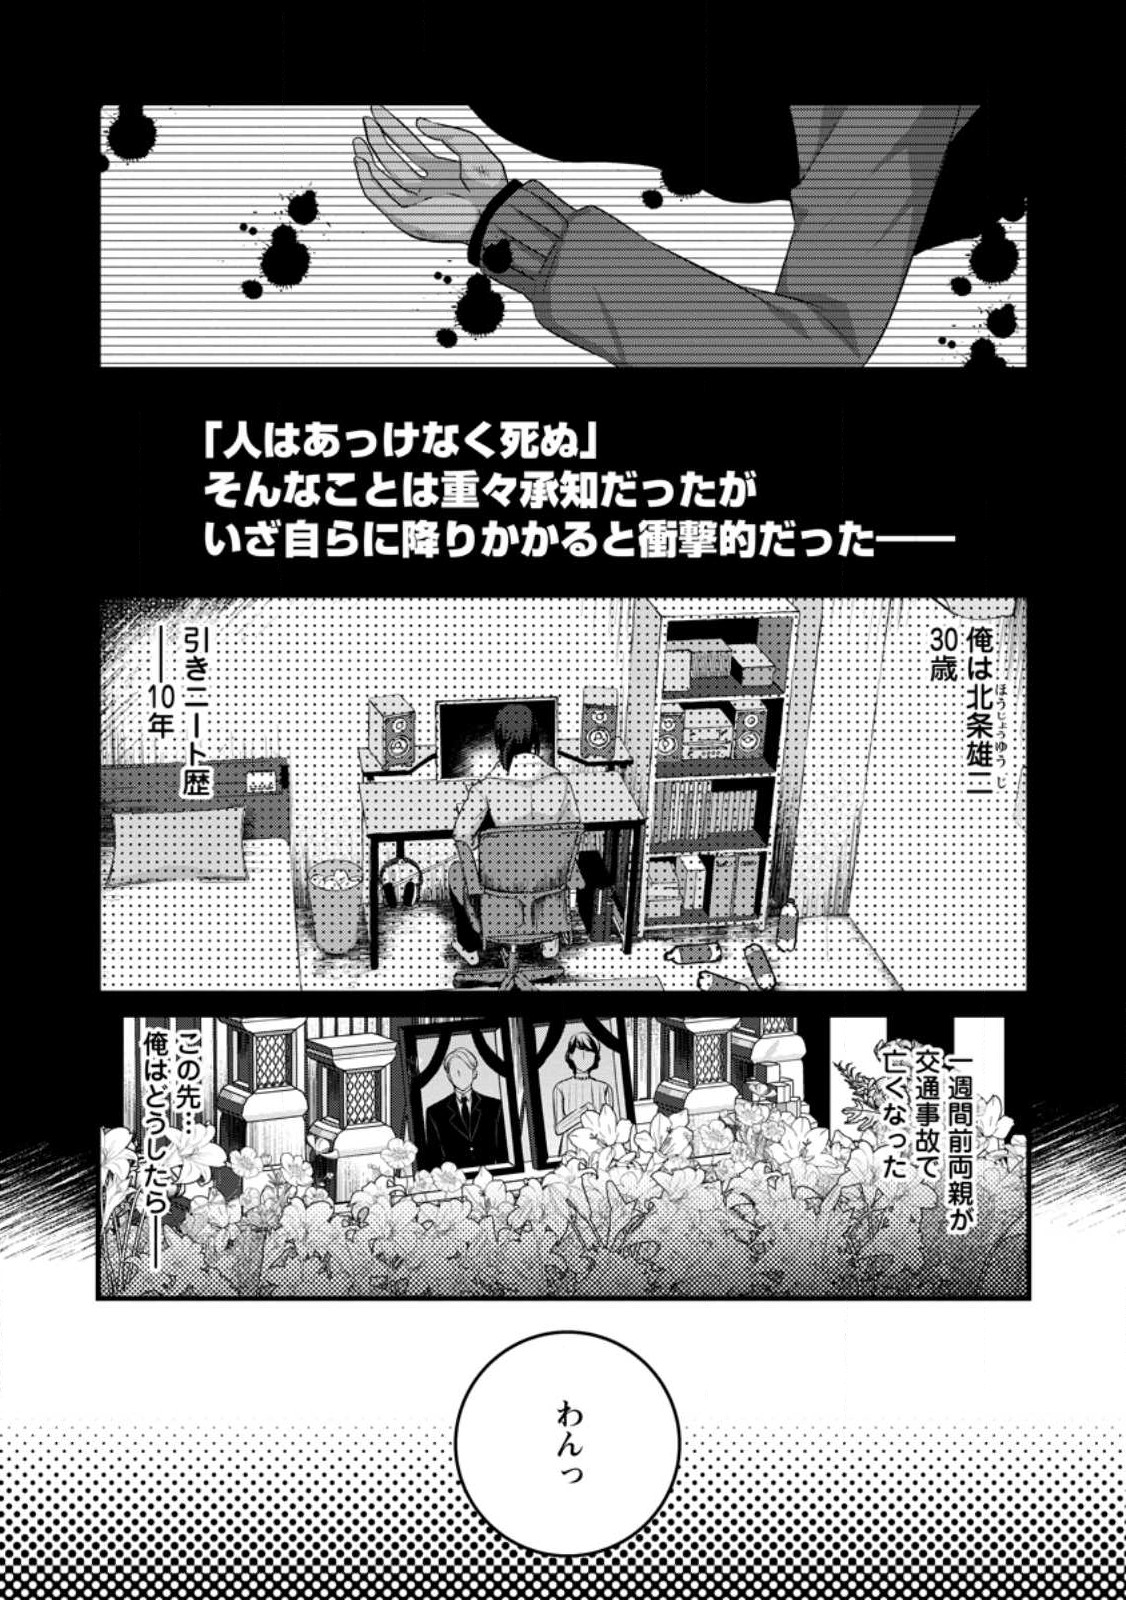 10-nen Goshi no HikiNEET wo Yamete Gaishutsu shitara Jitakugo to Isekai ni Tenishiteta - Chapter 1.1 - Page 2